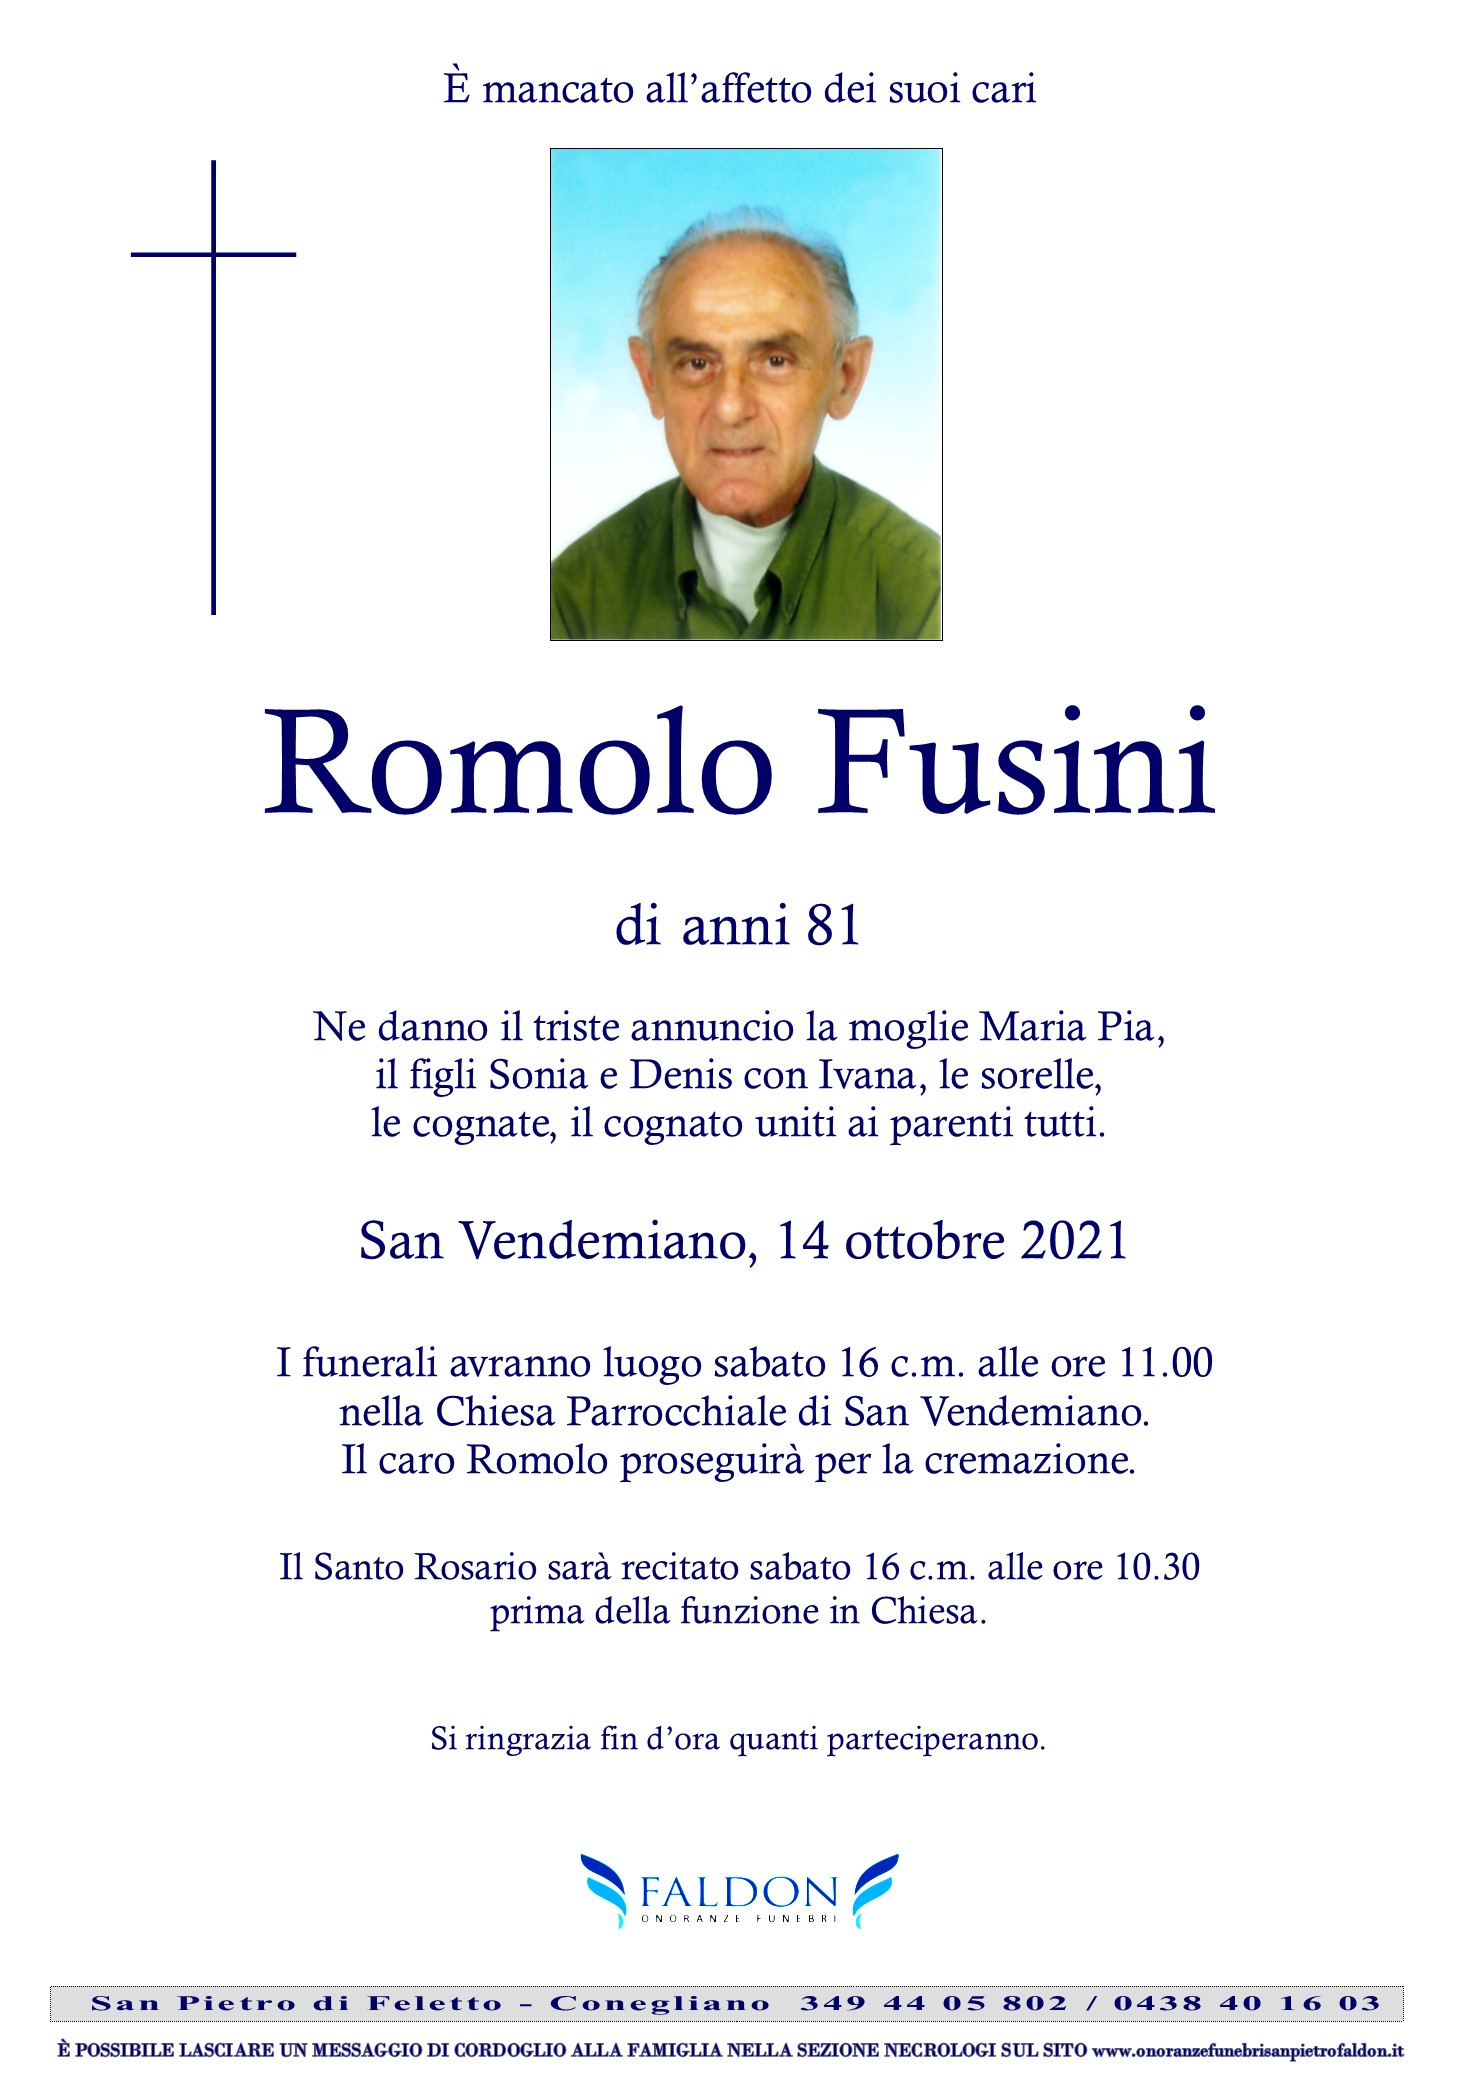 Romolo Fusini